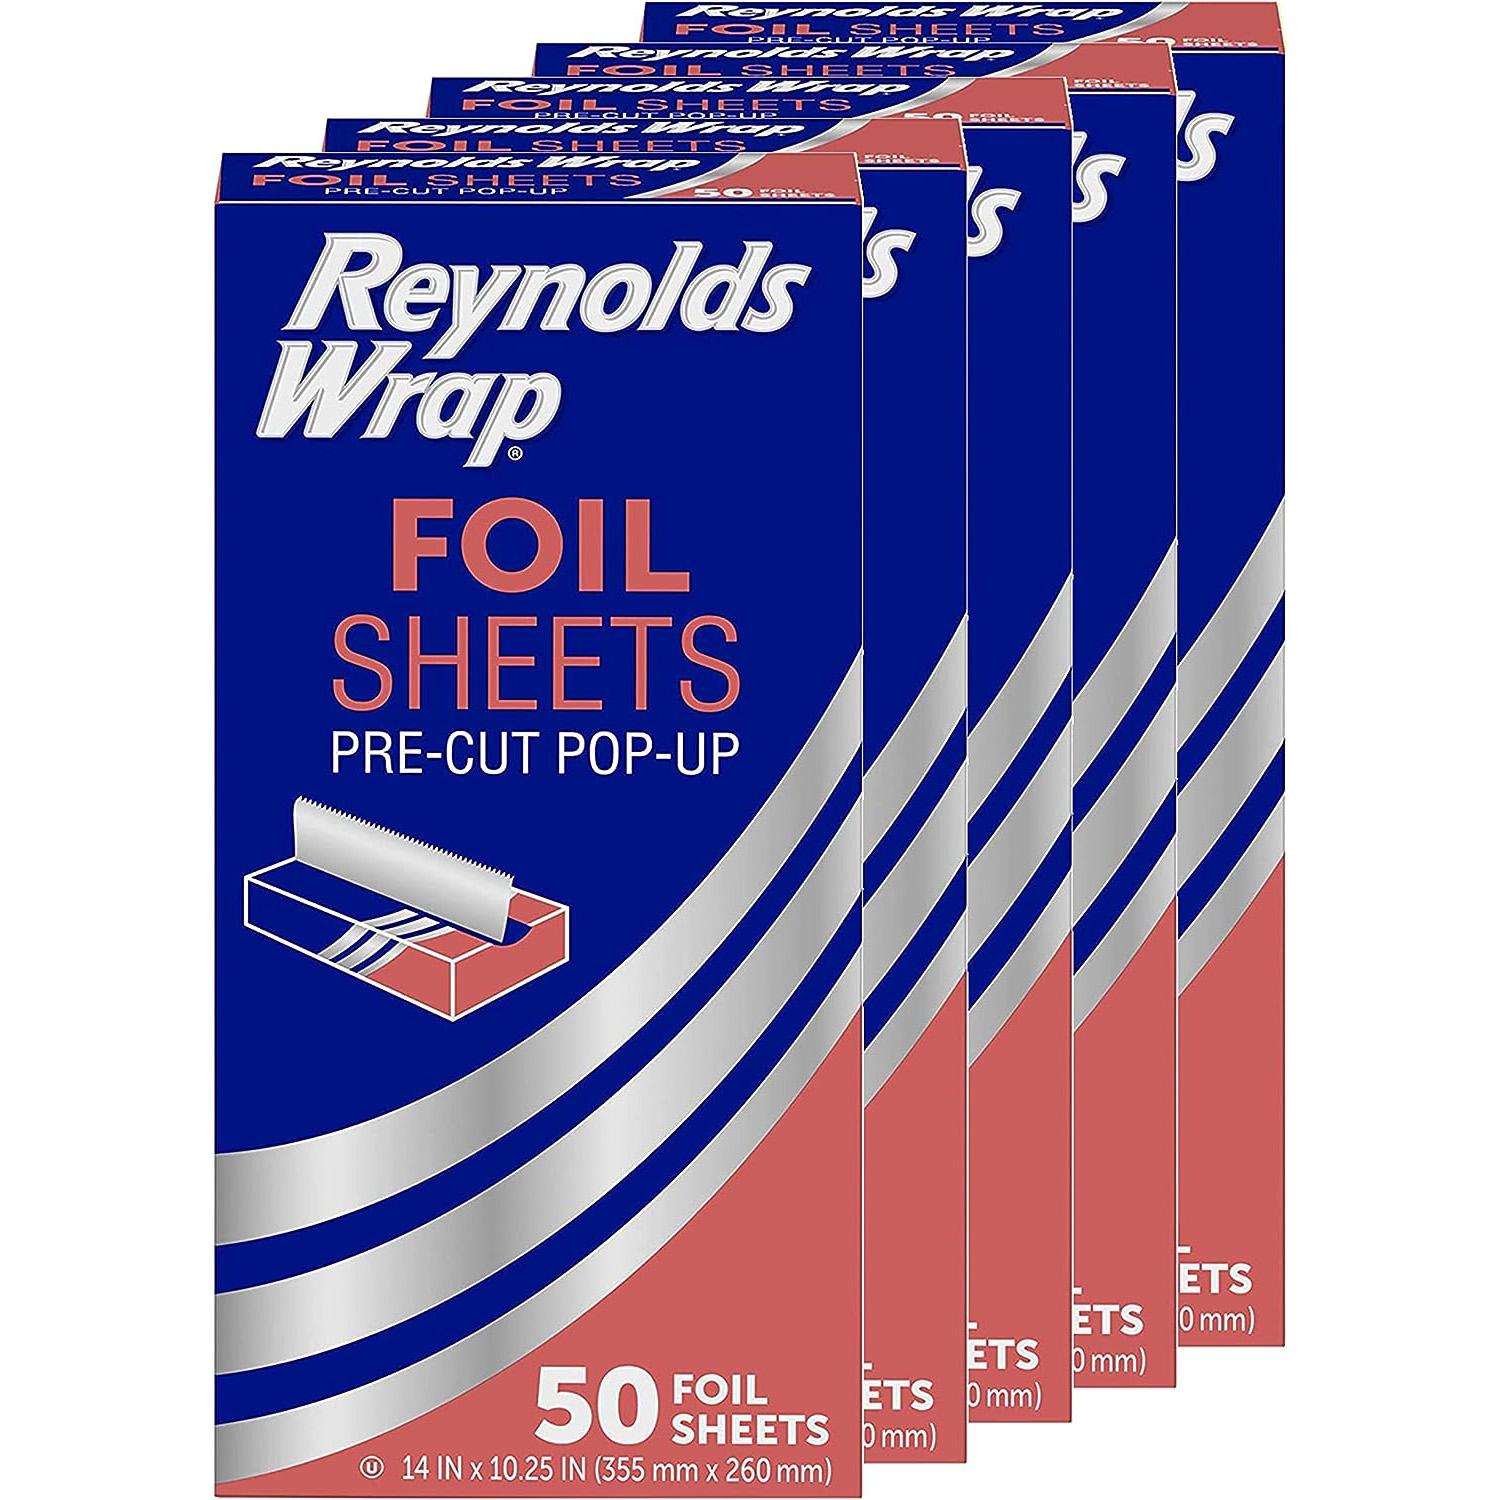 Reynolds Wrap Pre-Cut Pop-Up Aluminum Foil Sheets 5 Pack for $9.71